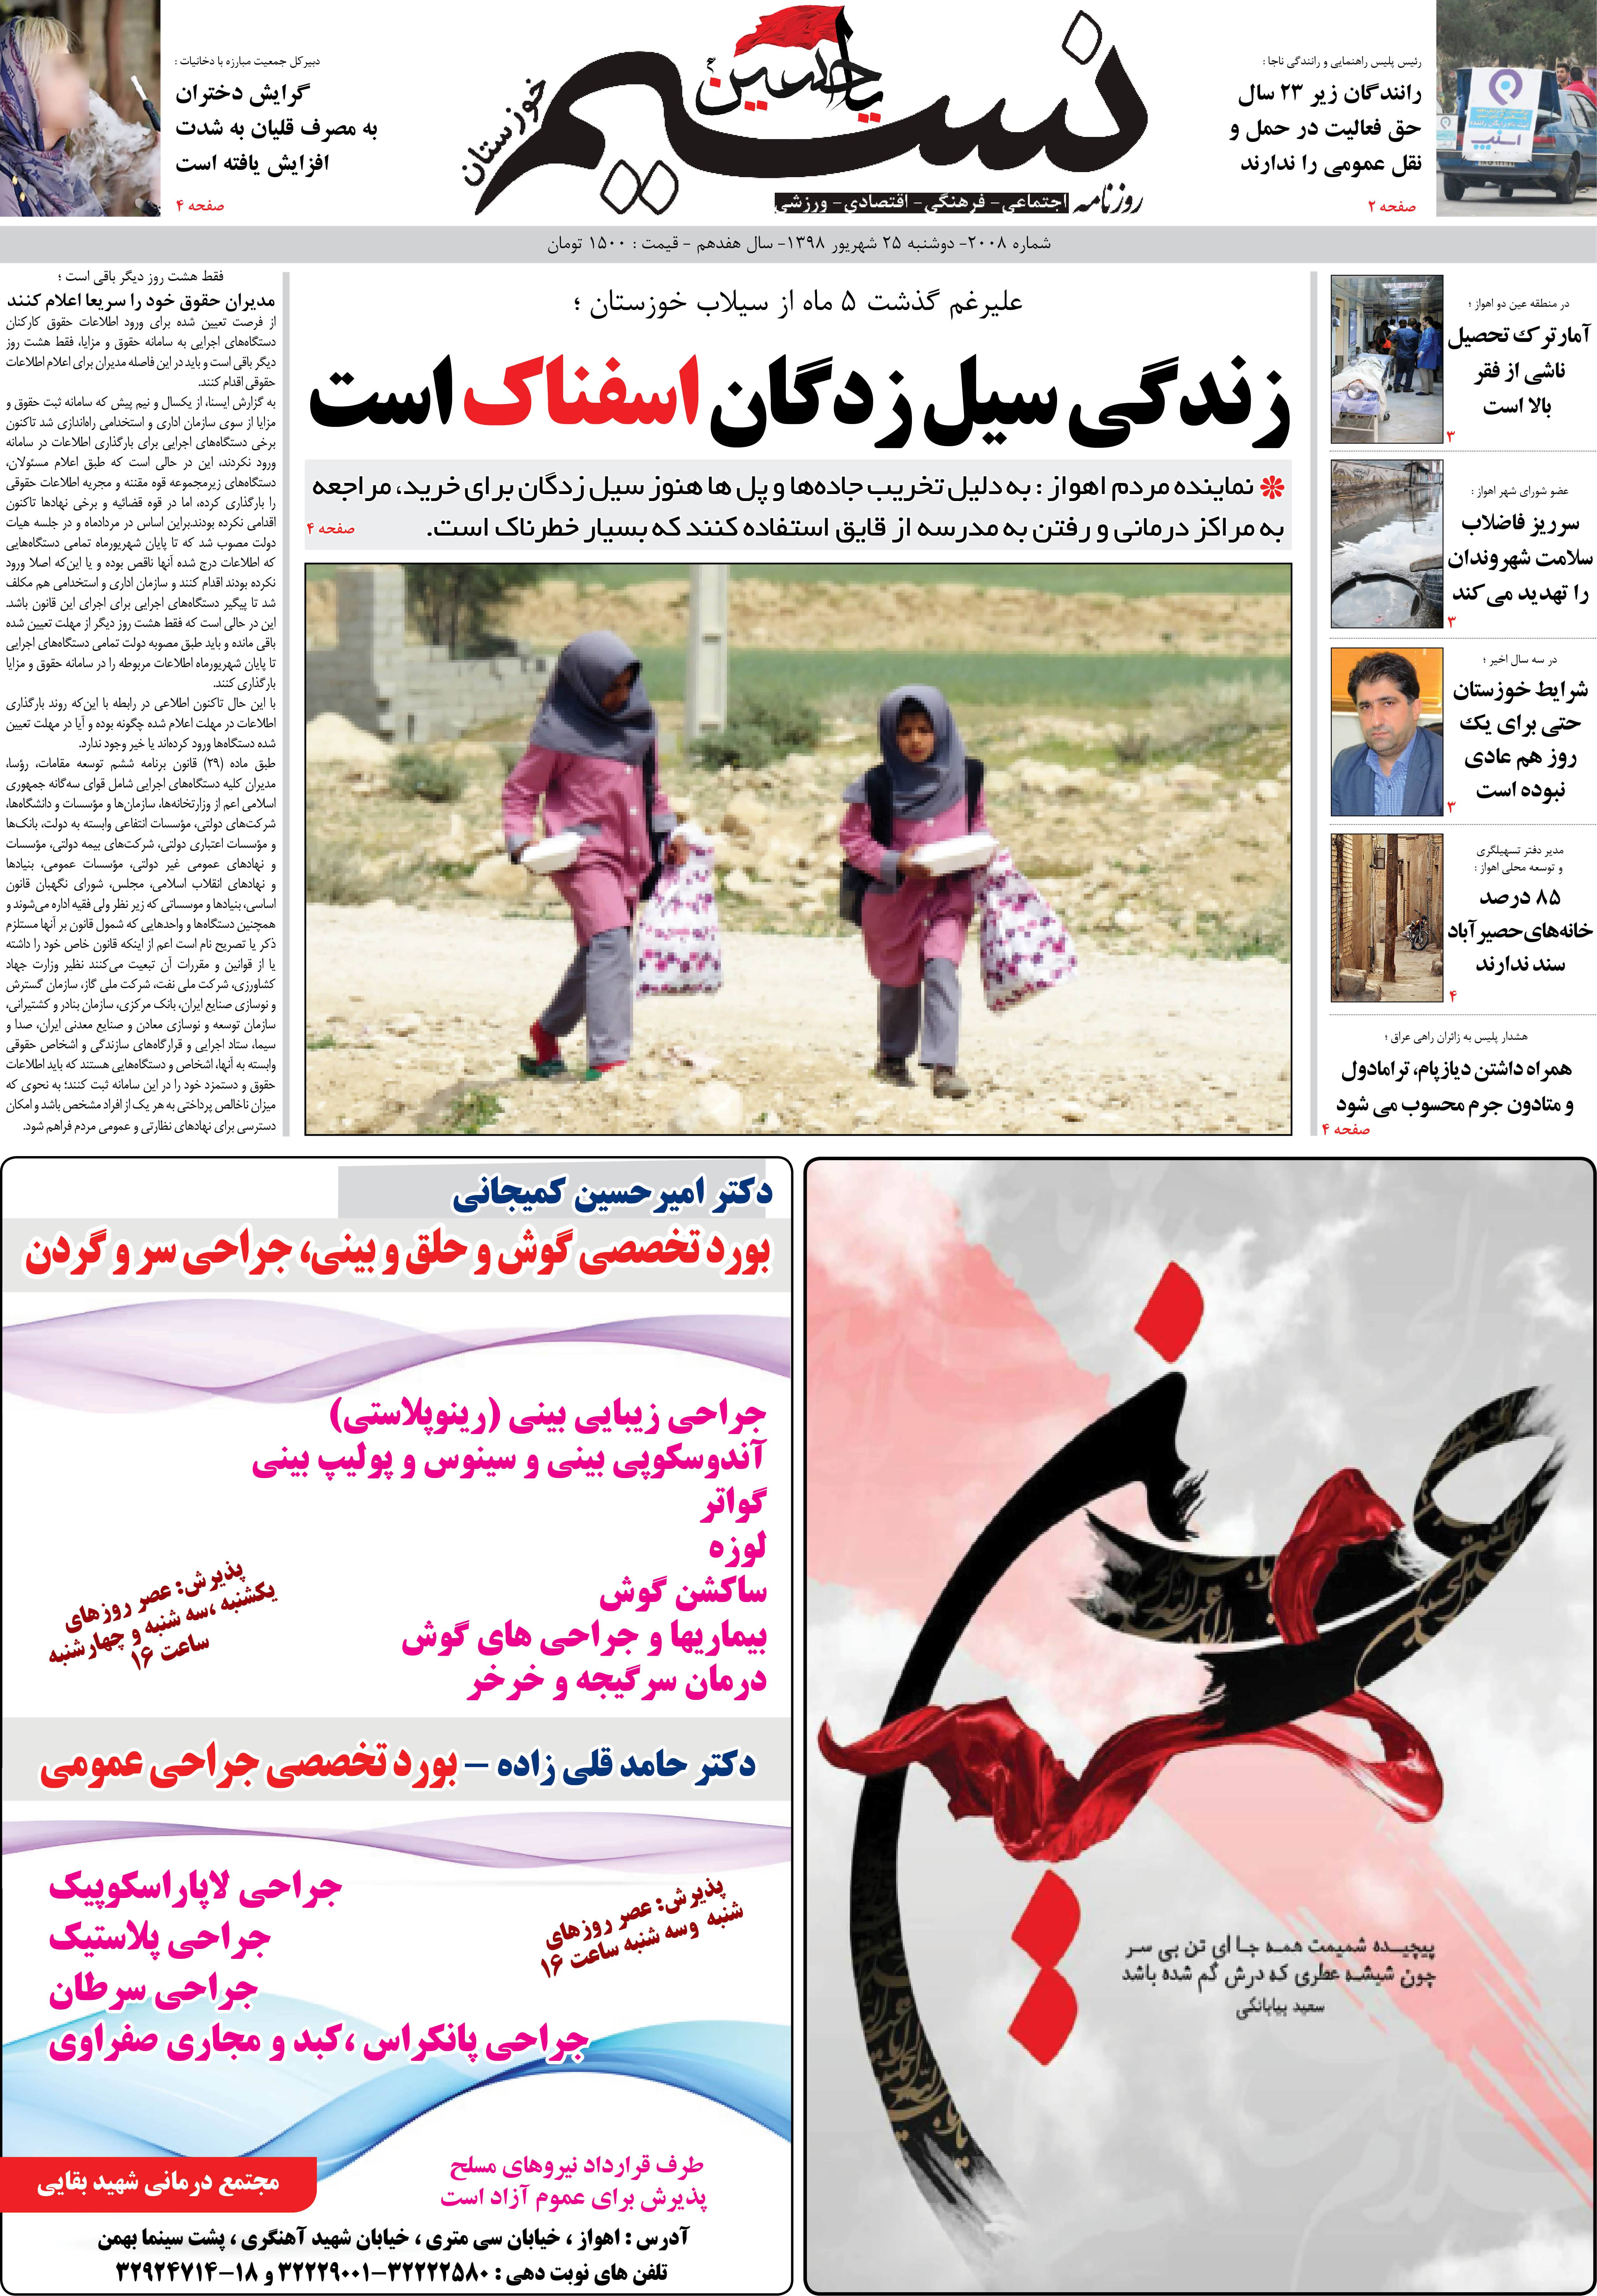 صفحه اصلی روزنامه نسیم شماره 2008 